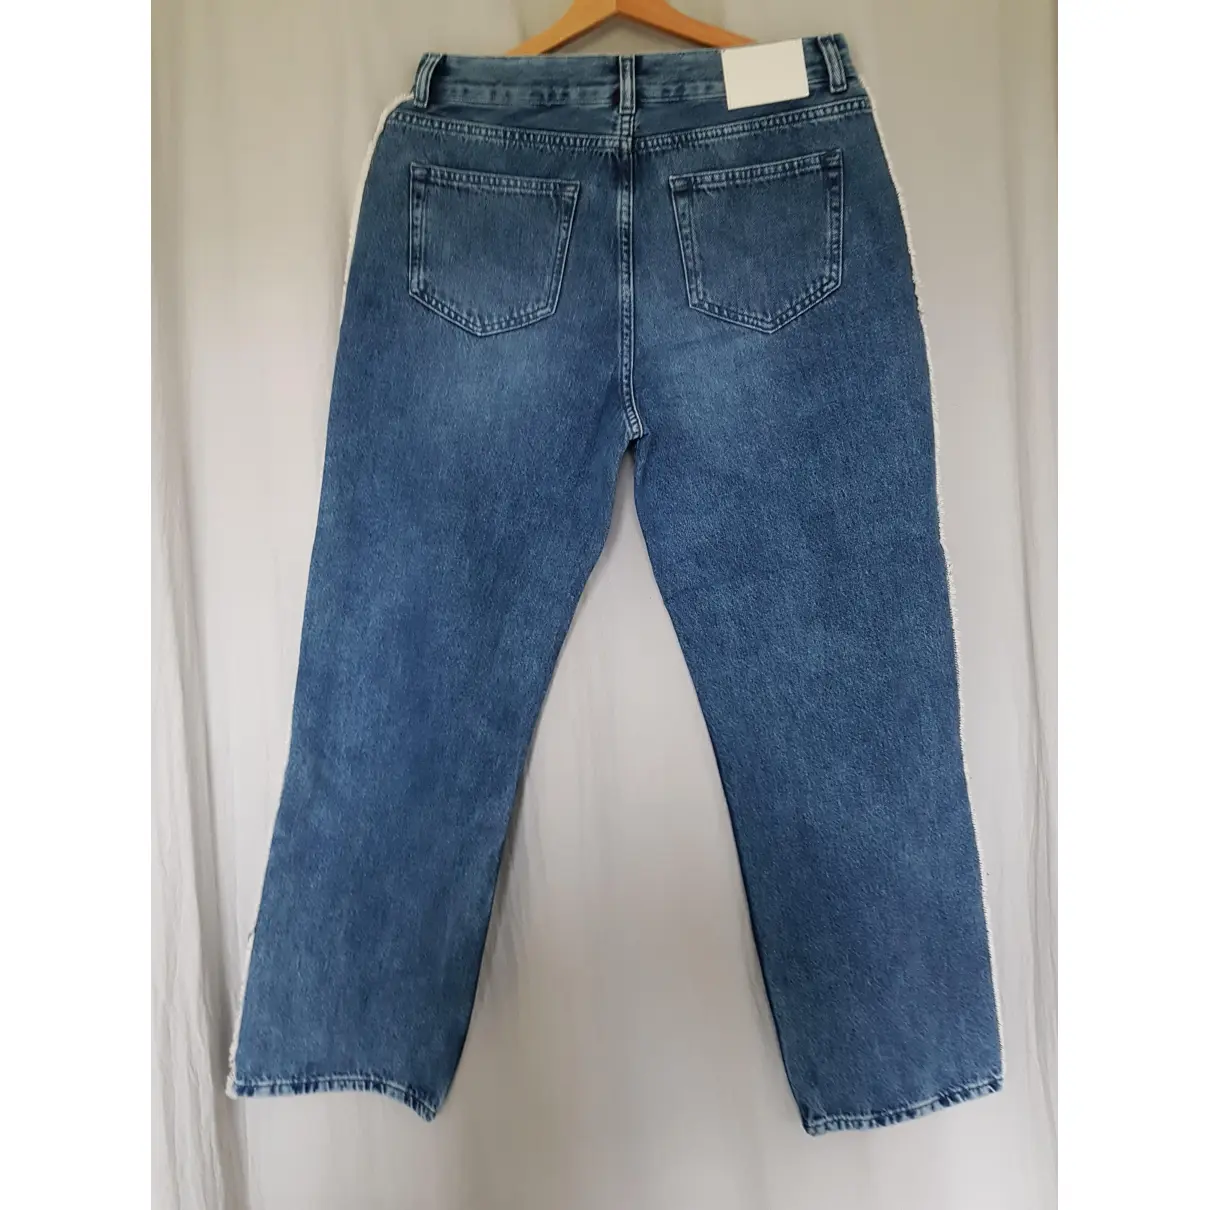 Buy Claudie Pierlot Spring Summer 2020 boyfriend jeans online